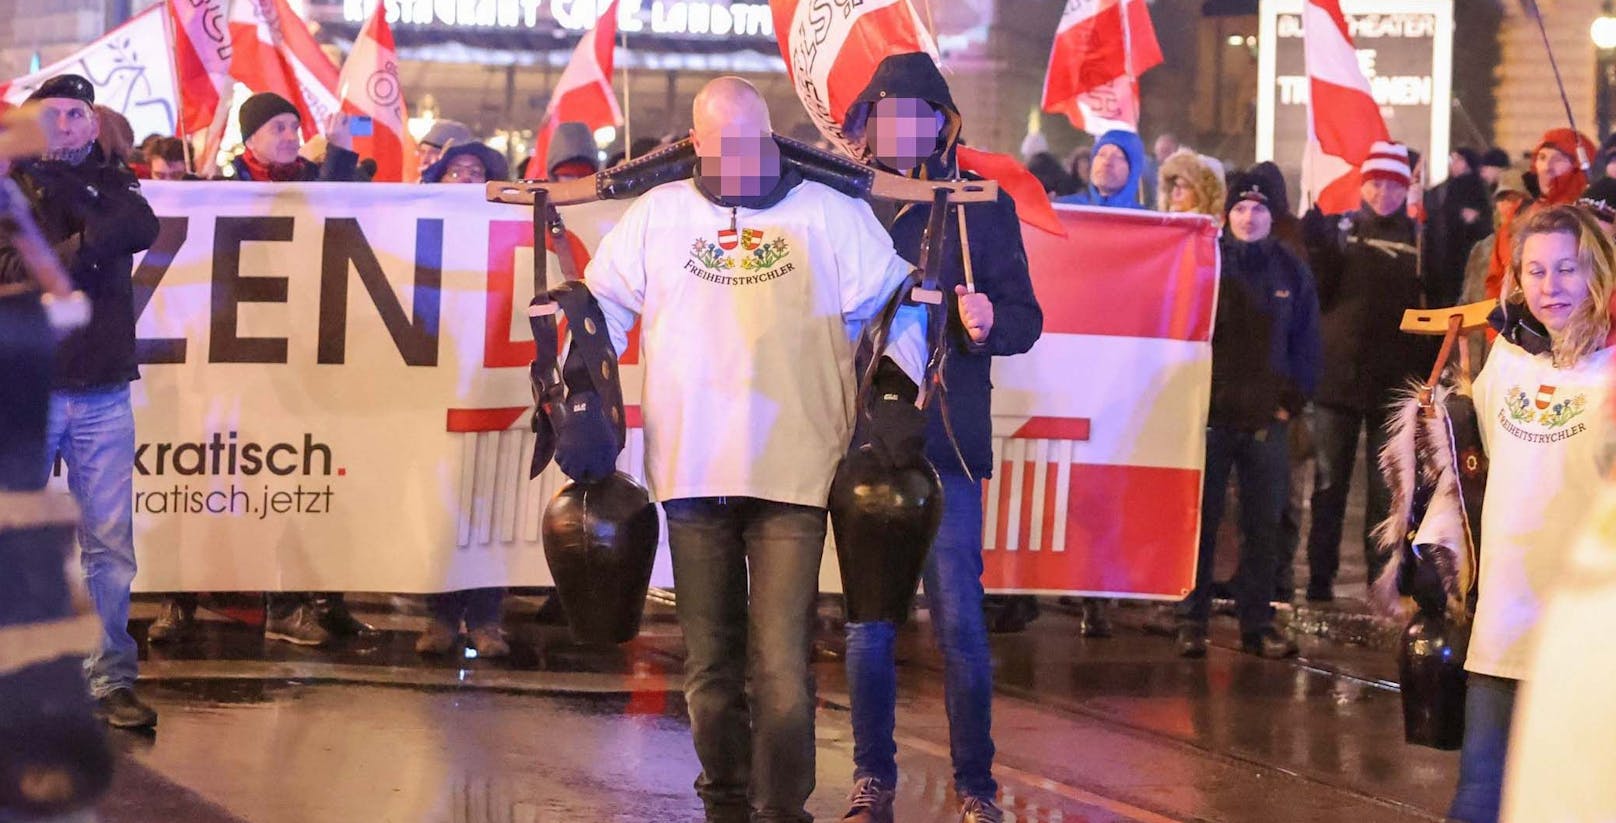 Der Verurteilte (nicht abgebildet) war Mitglied der sogenannten "Freiheitstrychler", die hier bei einer Demonstration in Wien zu sehen sind.